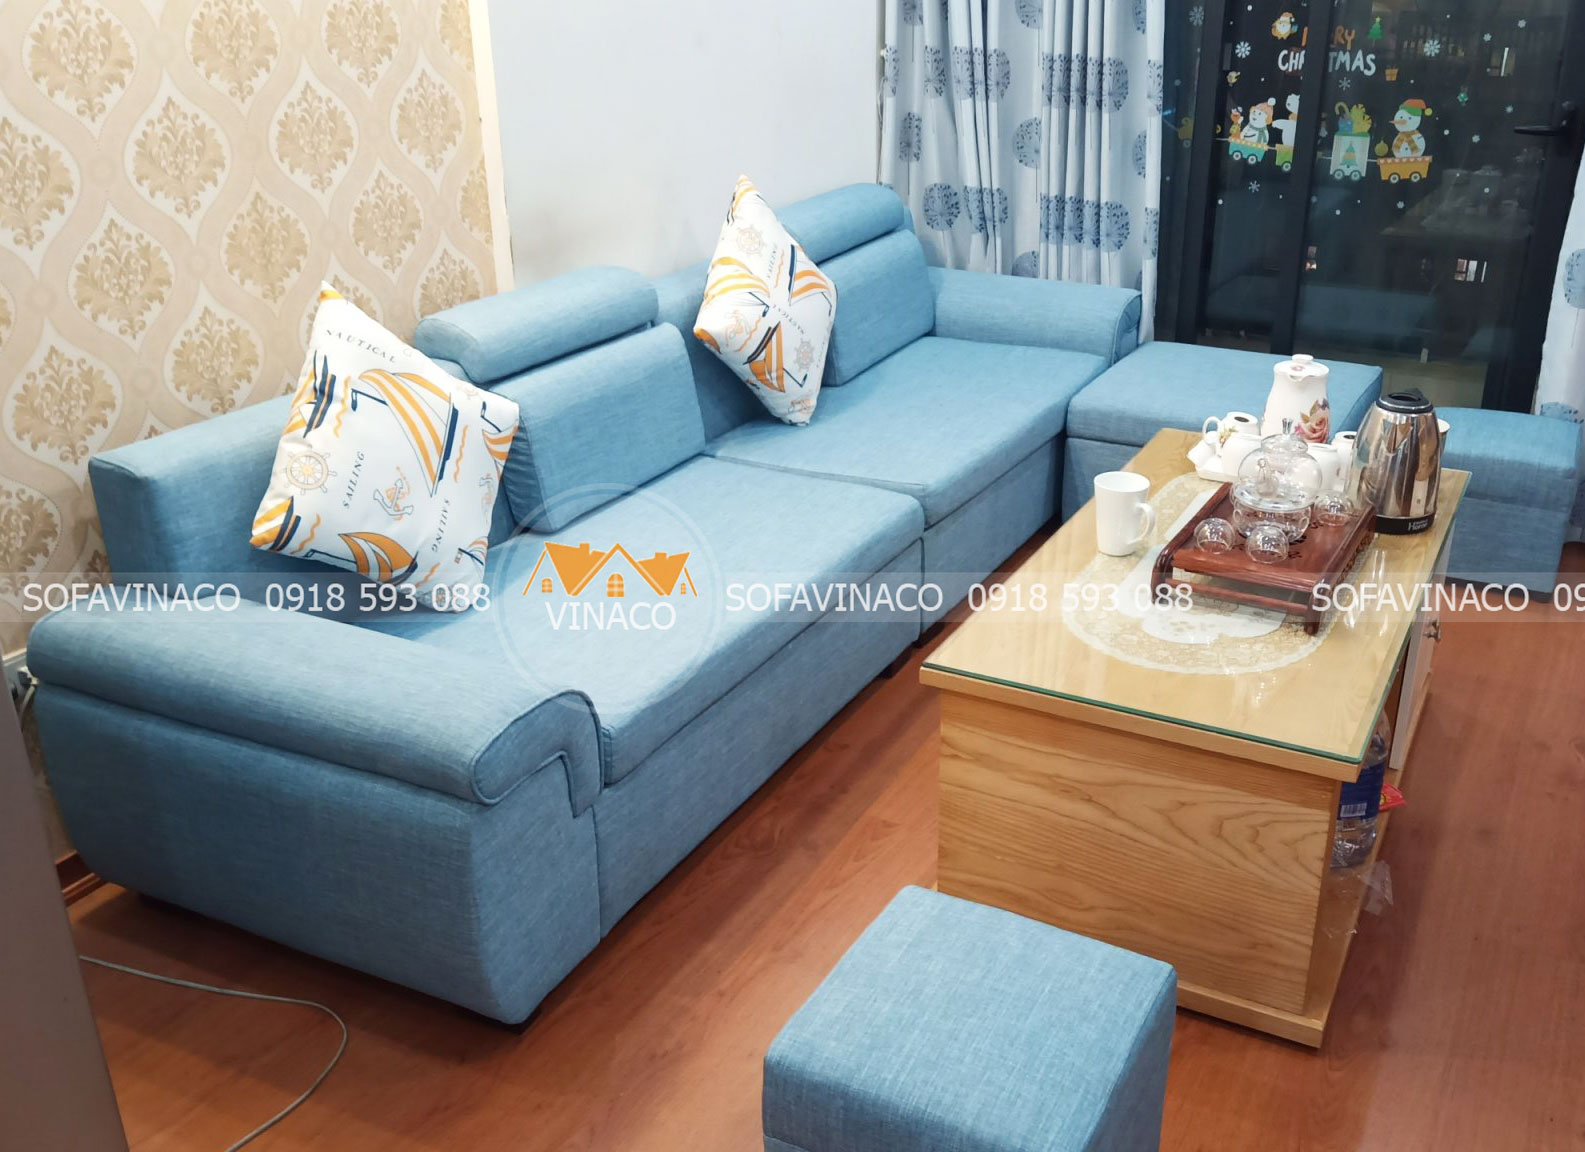 Bọc ghế sofa quận Phú Nhuận dịch vụ bọc ghế tại nhà giá rẻ chất lượng đảm bảo tại TPHCM